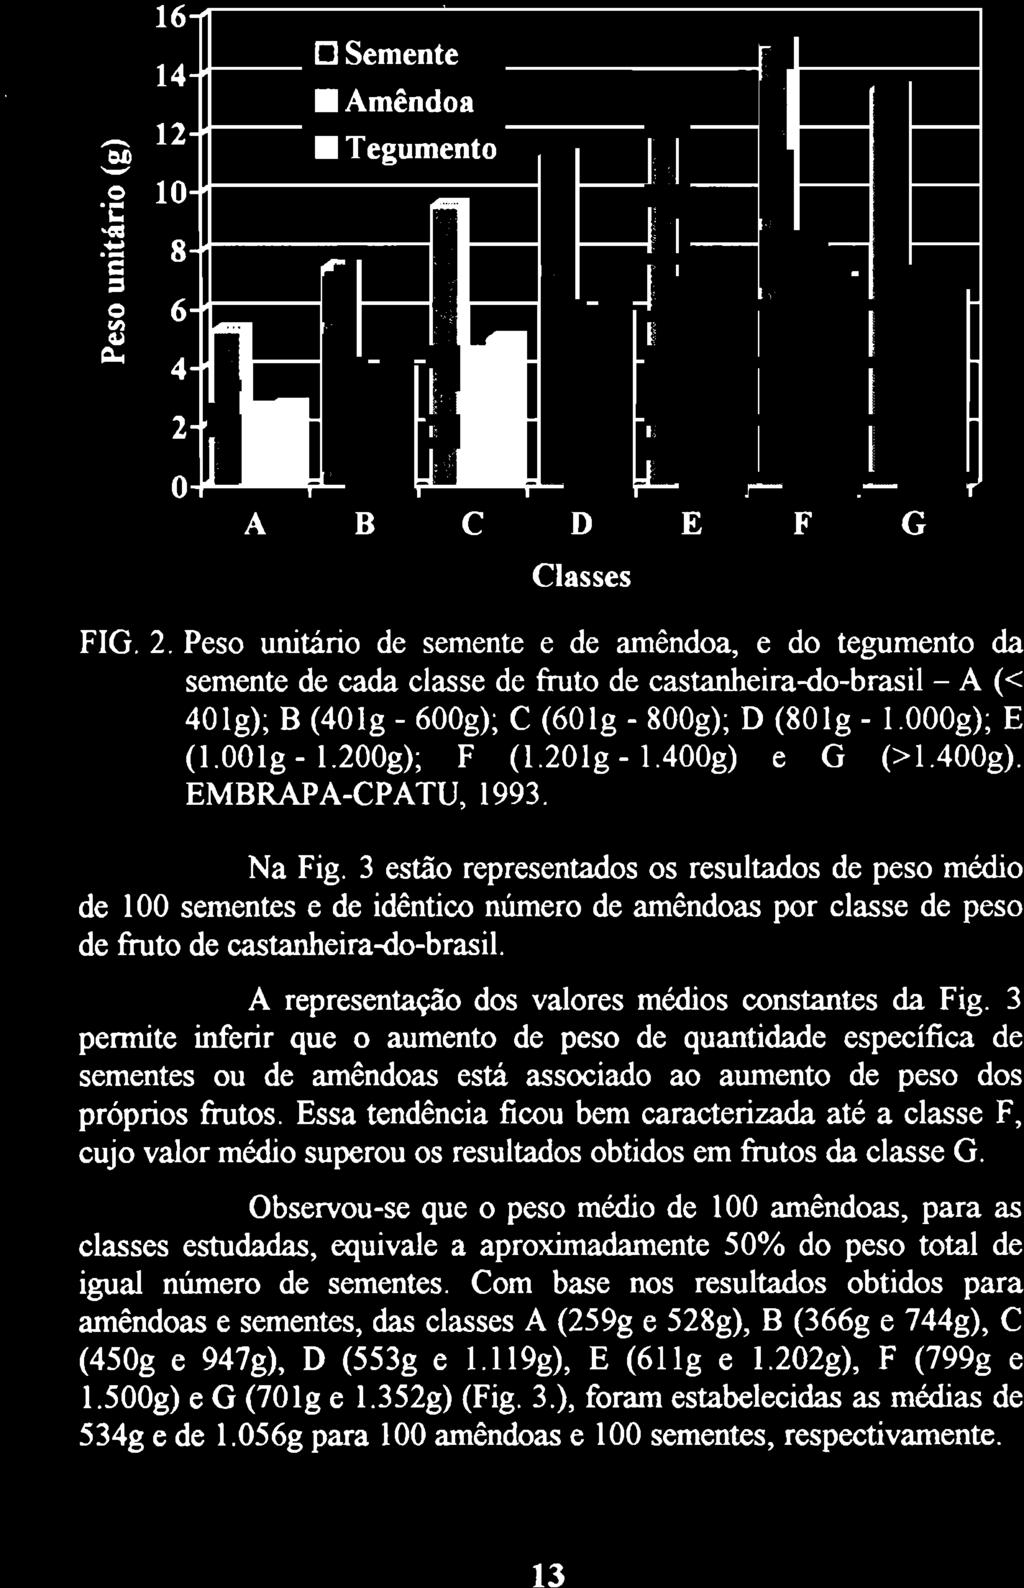 3 estão representados os resultados de peso médio de 100 sementes e de idêntico número de amêndoas por classe de peso de fruto de castanheira-do-brasil.